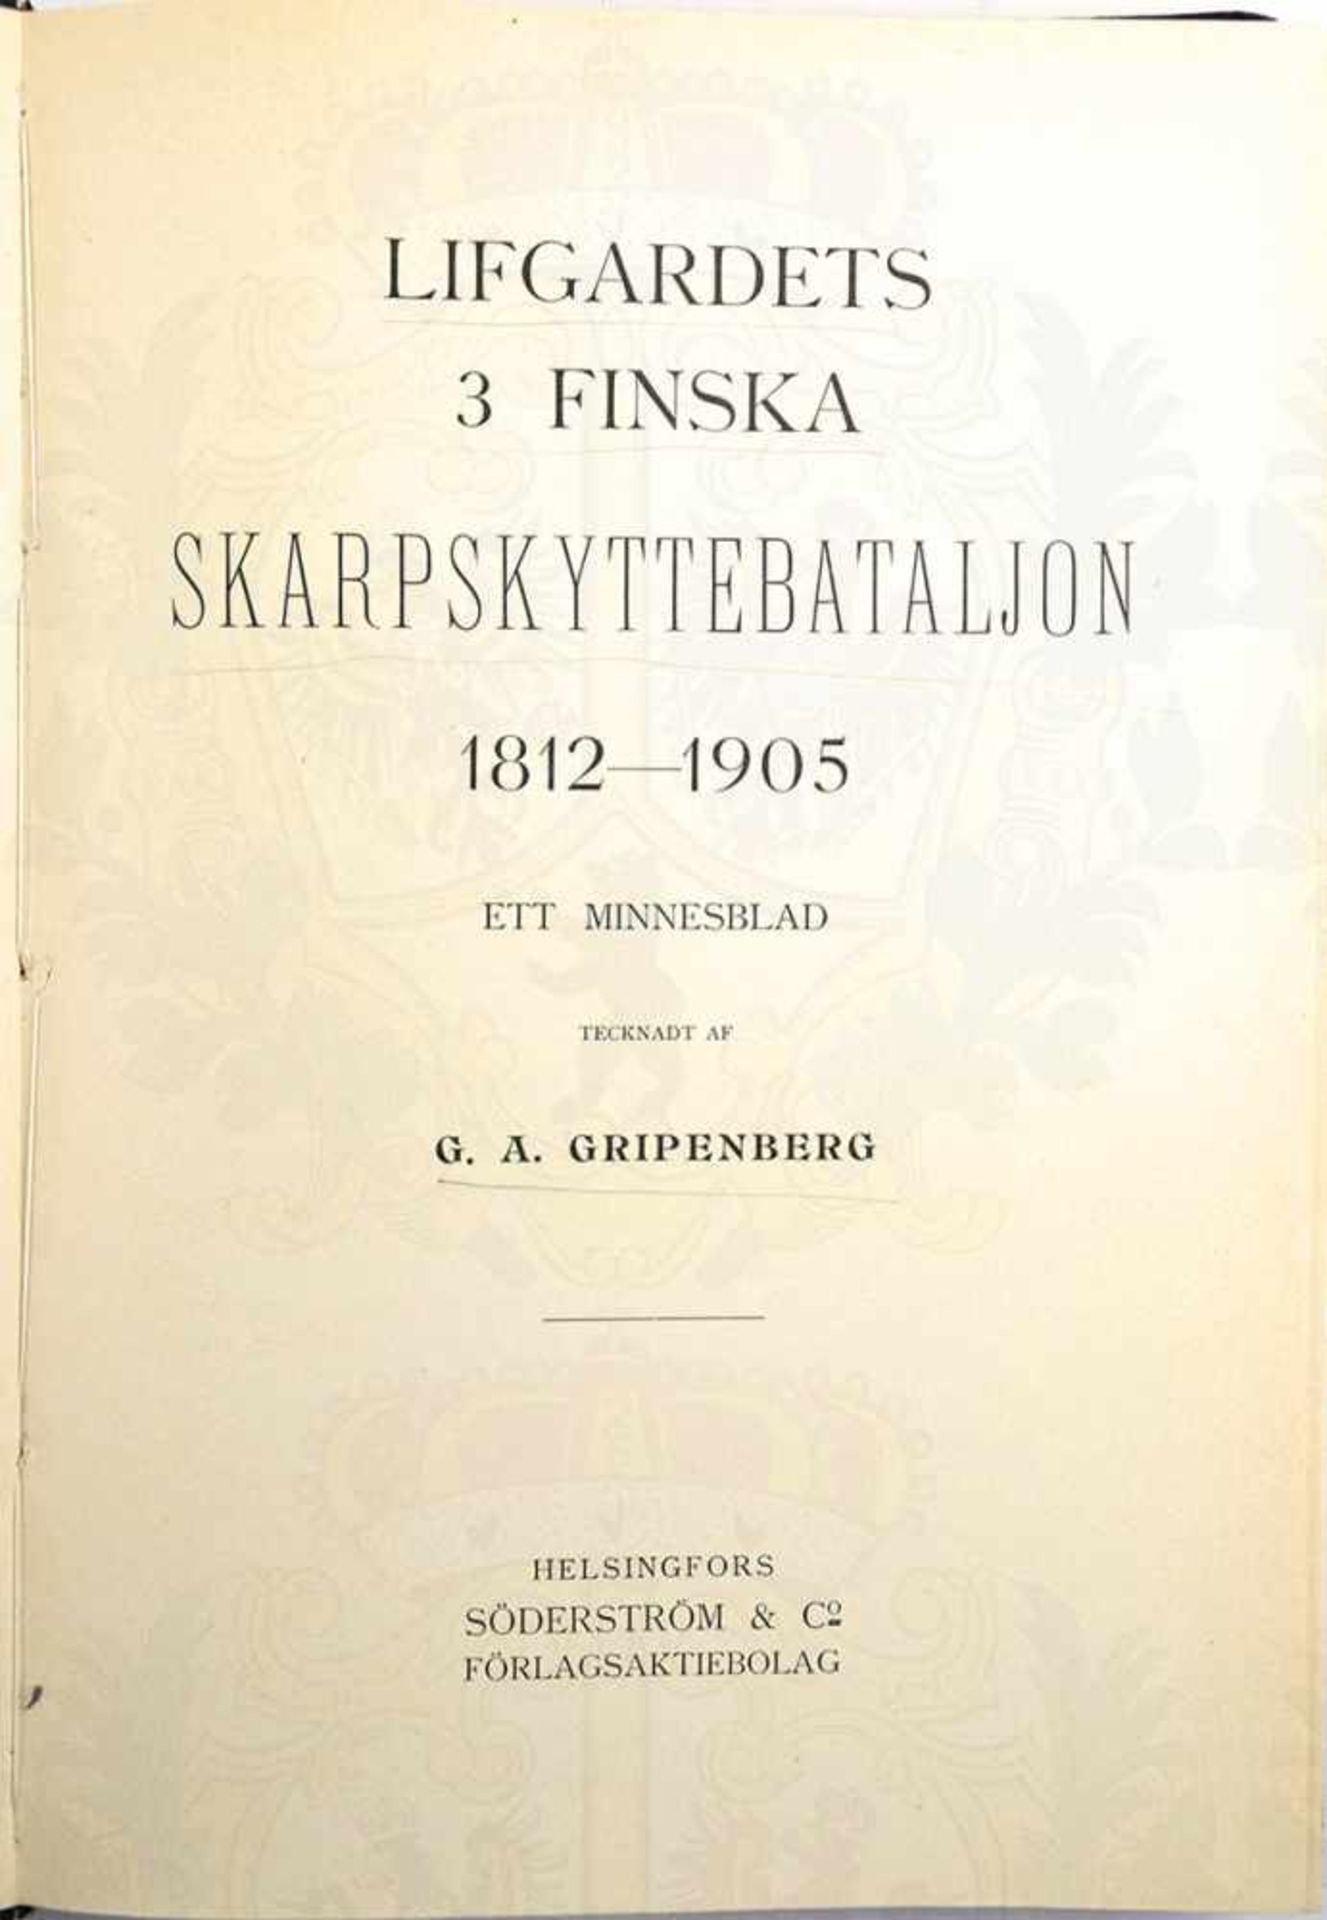 3. FINNISCHES SCHARFSCHÜTZENBATAILLON 1812-1905, schwedischer Text, Helsinki 1905, 273 S., Abb.,